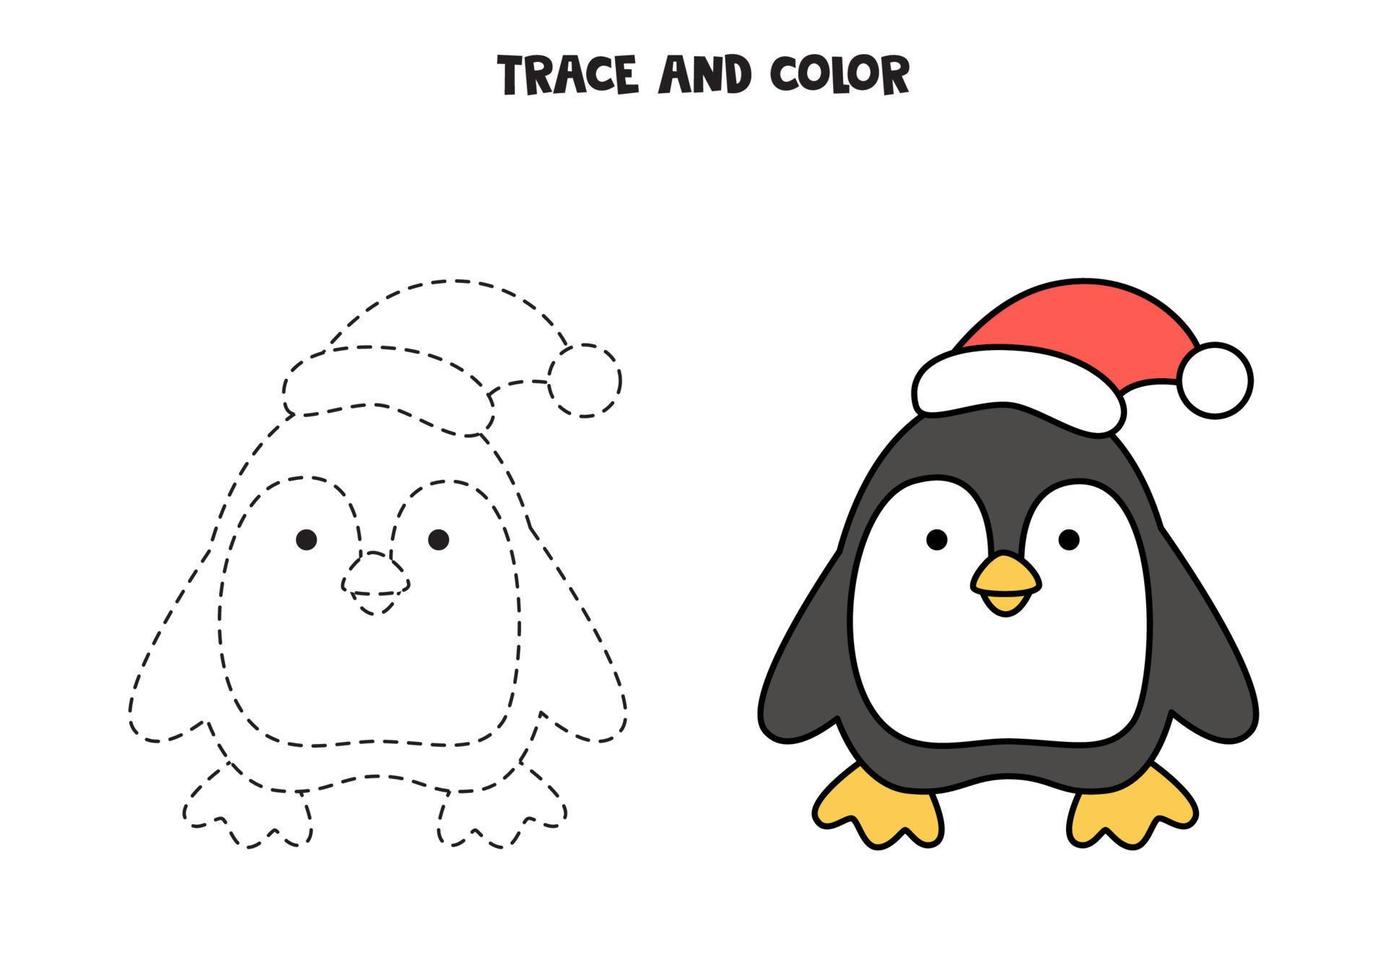 tracez et coloriez le pingouin mignon. feuille de calcul pour les enfants. vecteur